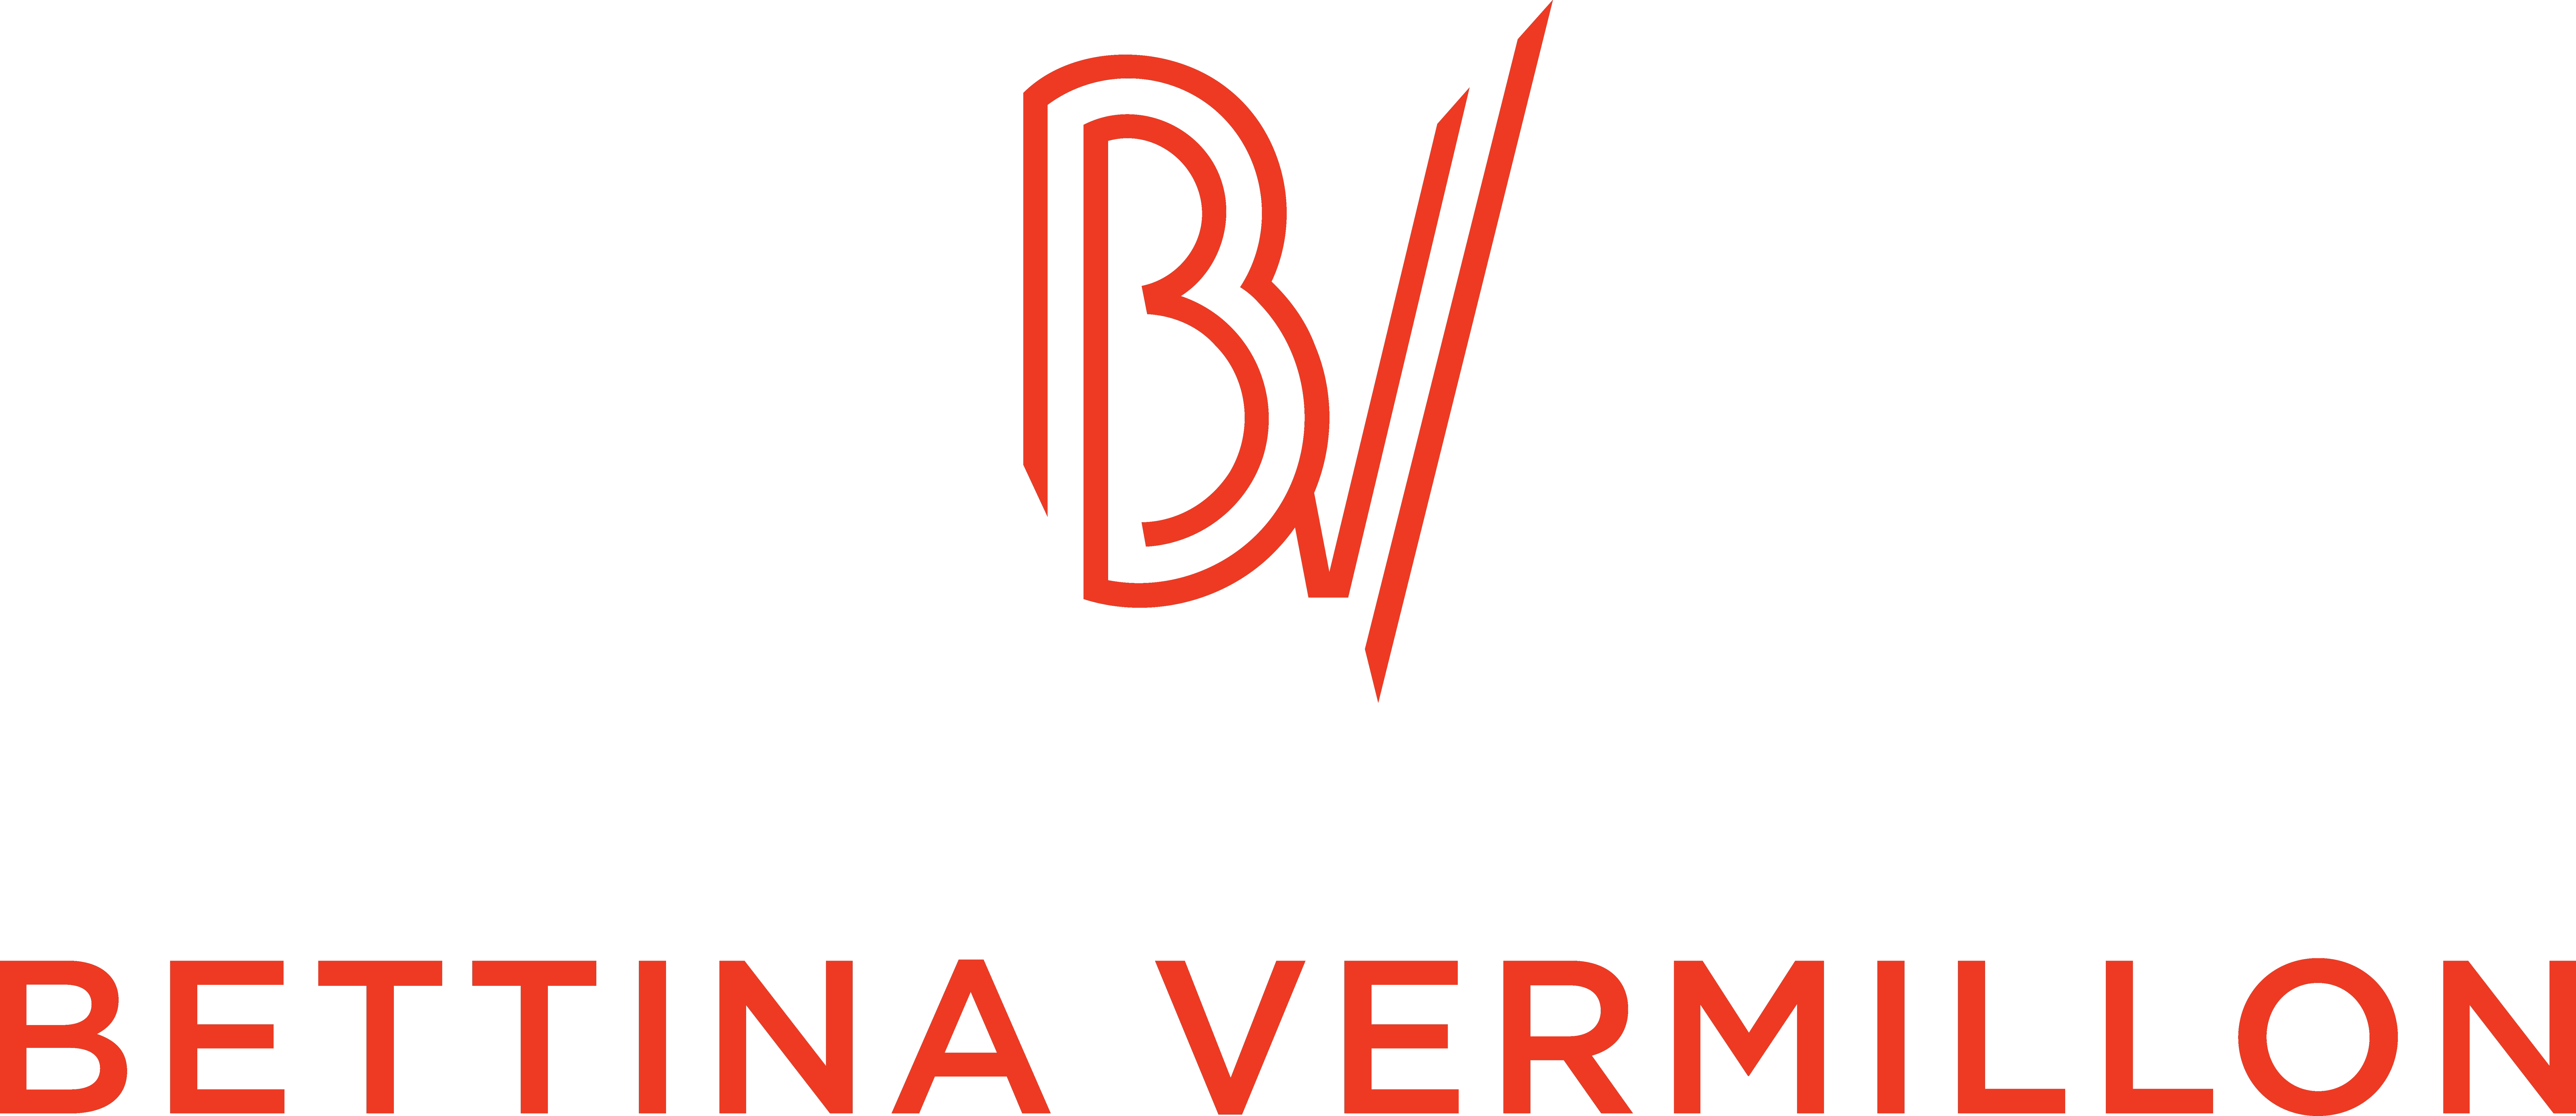 BV Logo - logo BV - Bettina Vermillon